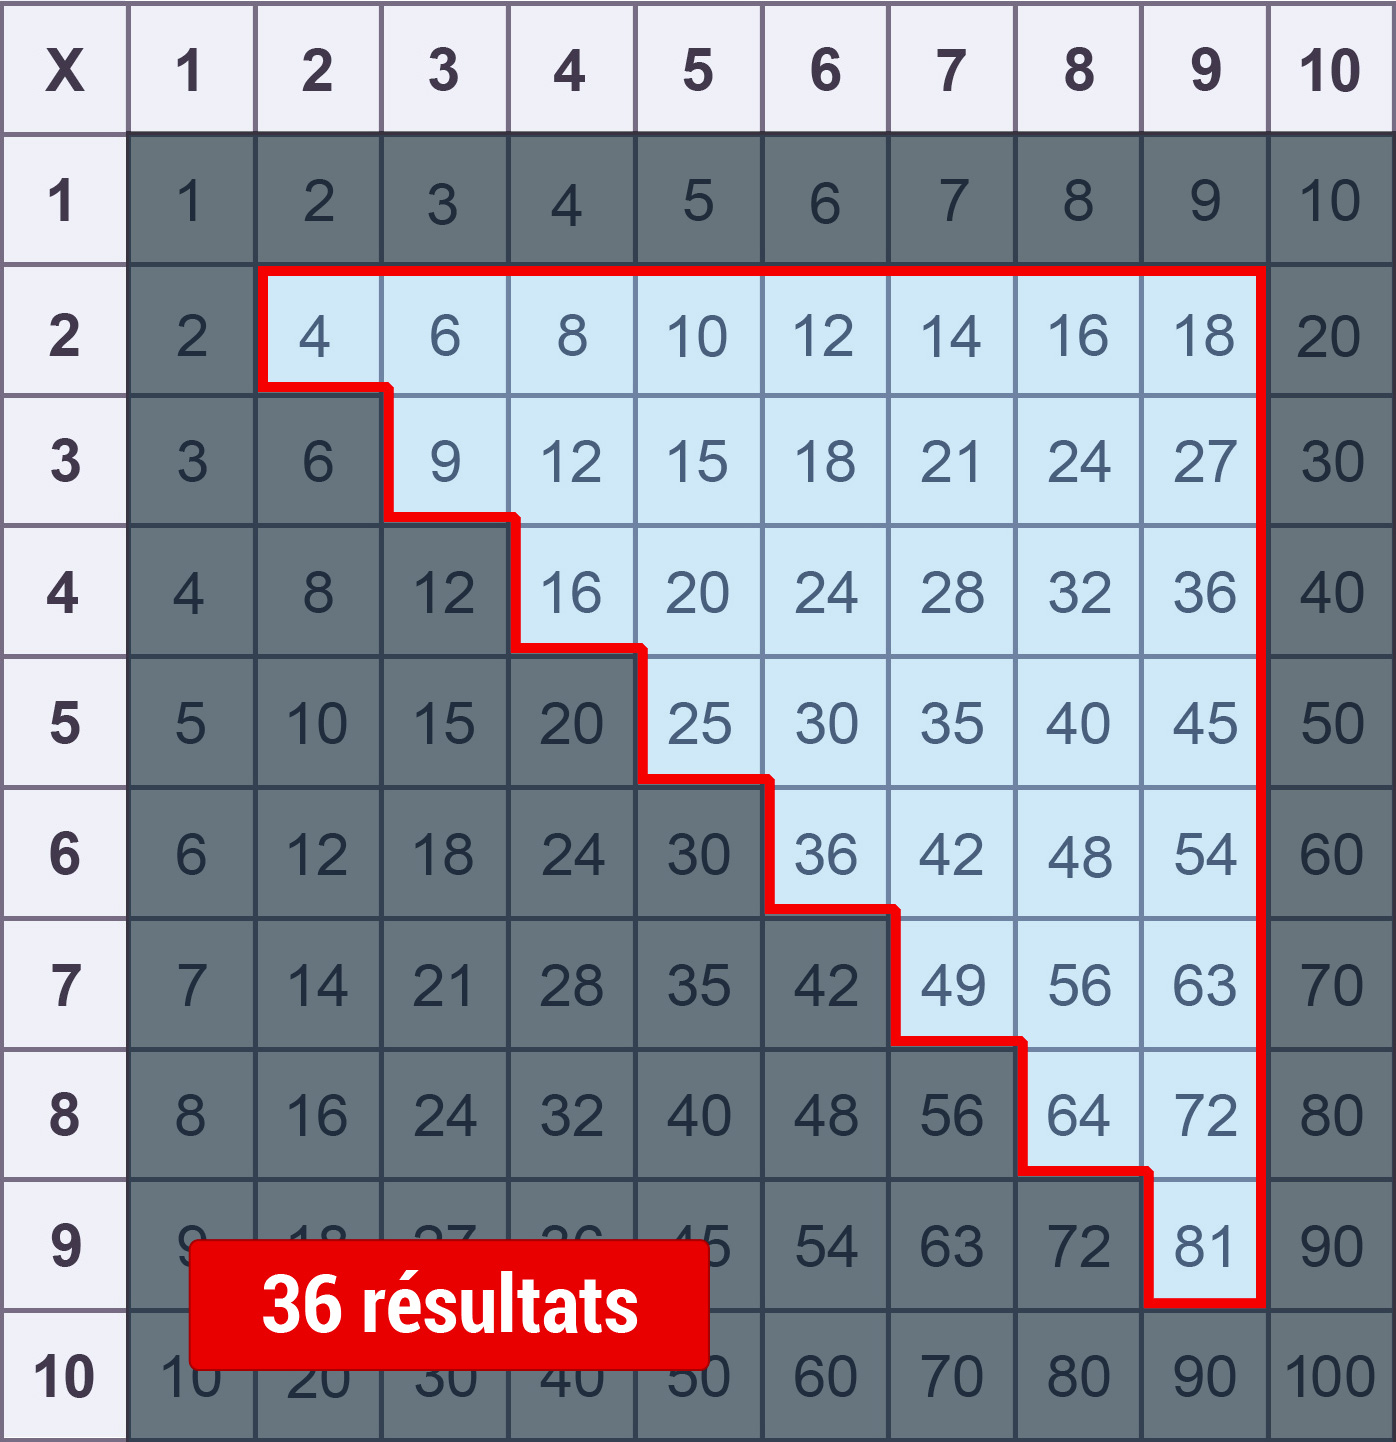 Apprendre les tables de multiplication facilement